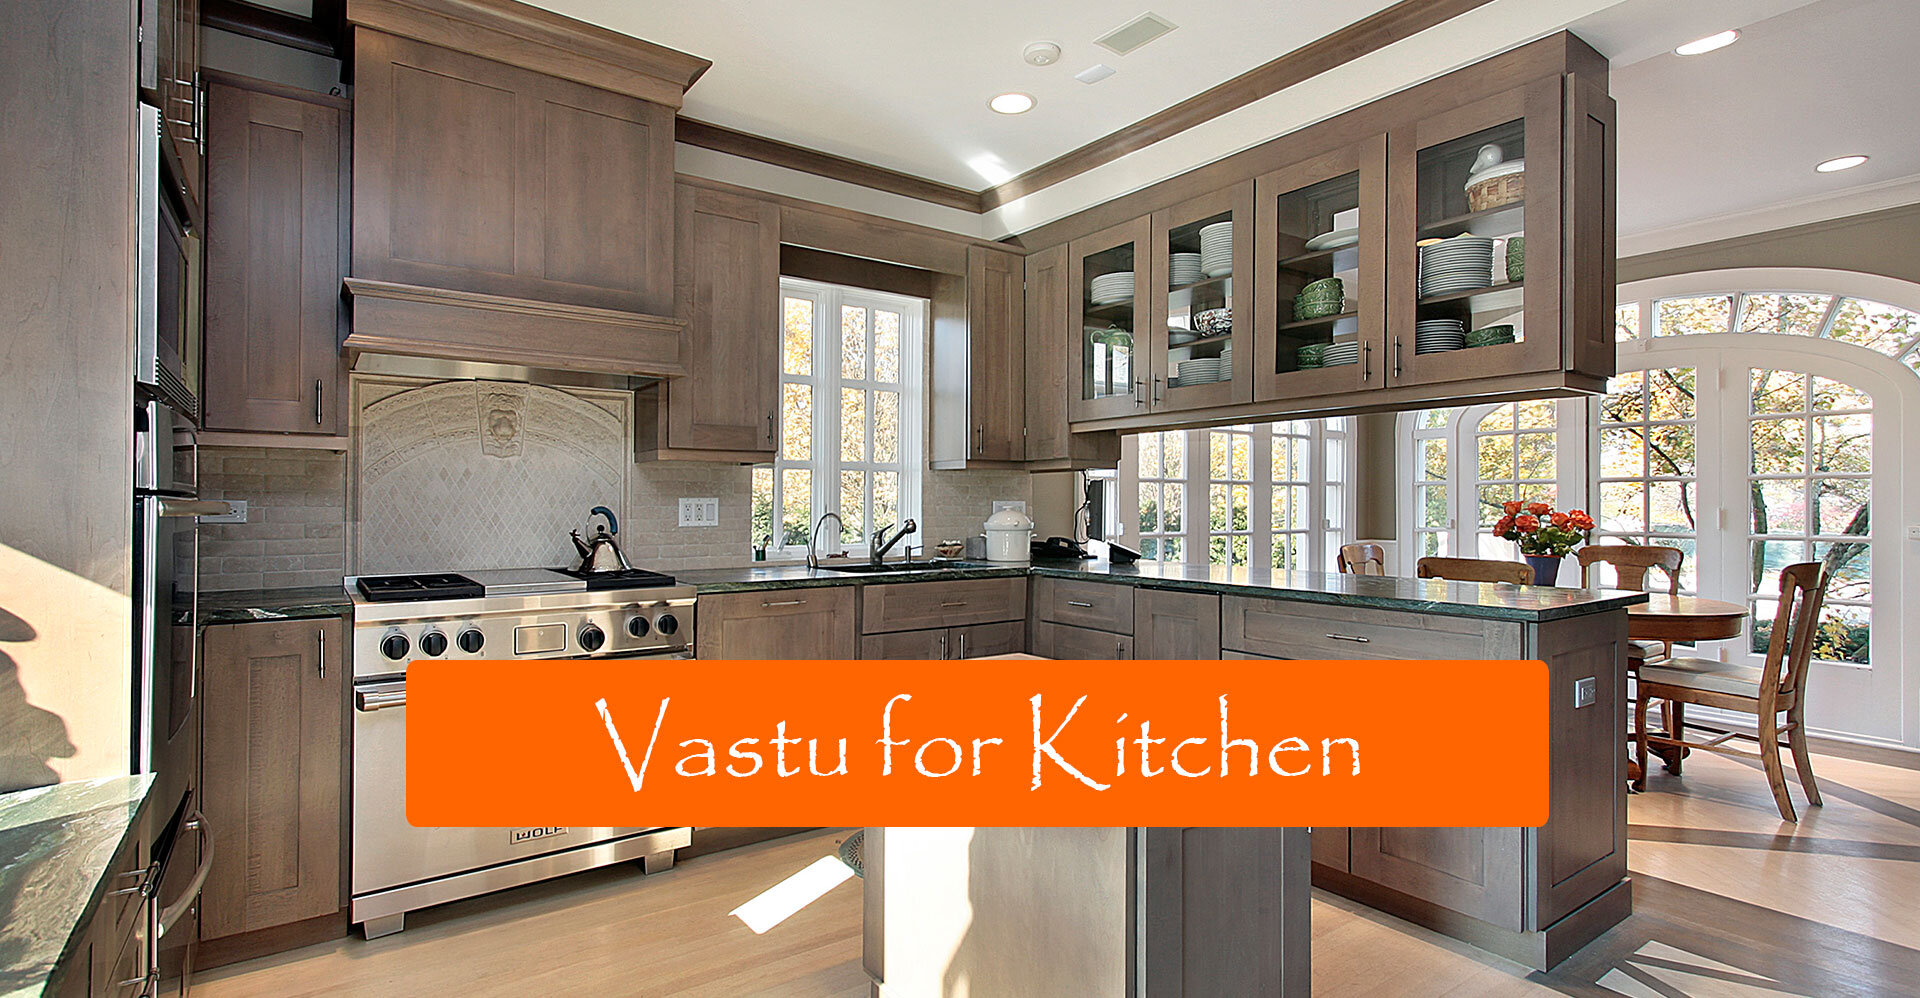 Vastu for Kitchen : How to Design a Vastu-friendly Kitchen?